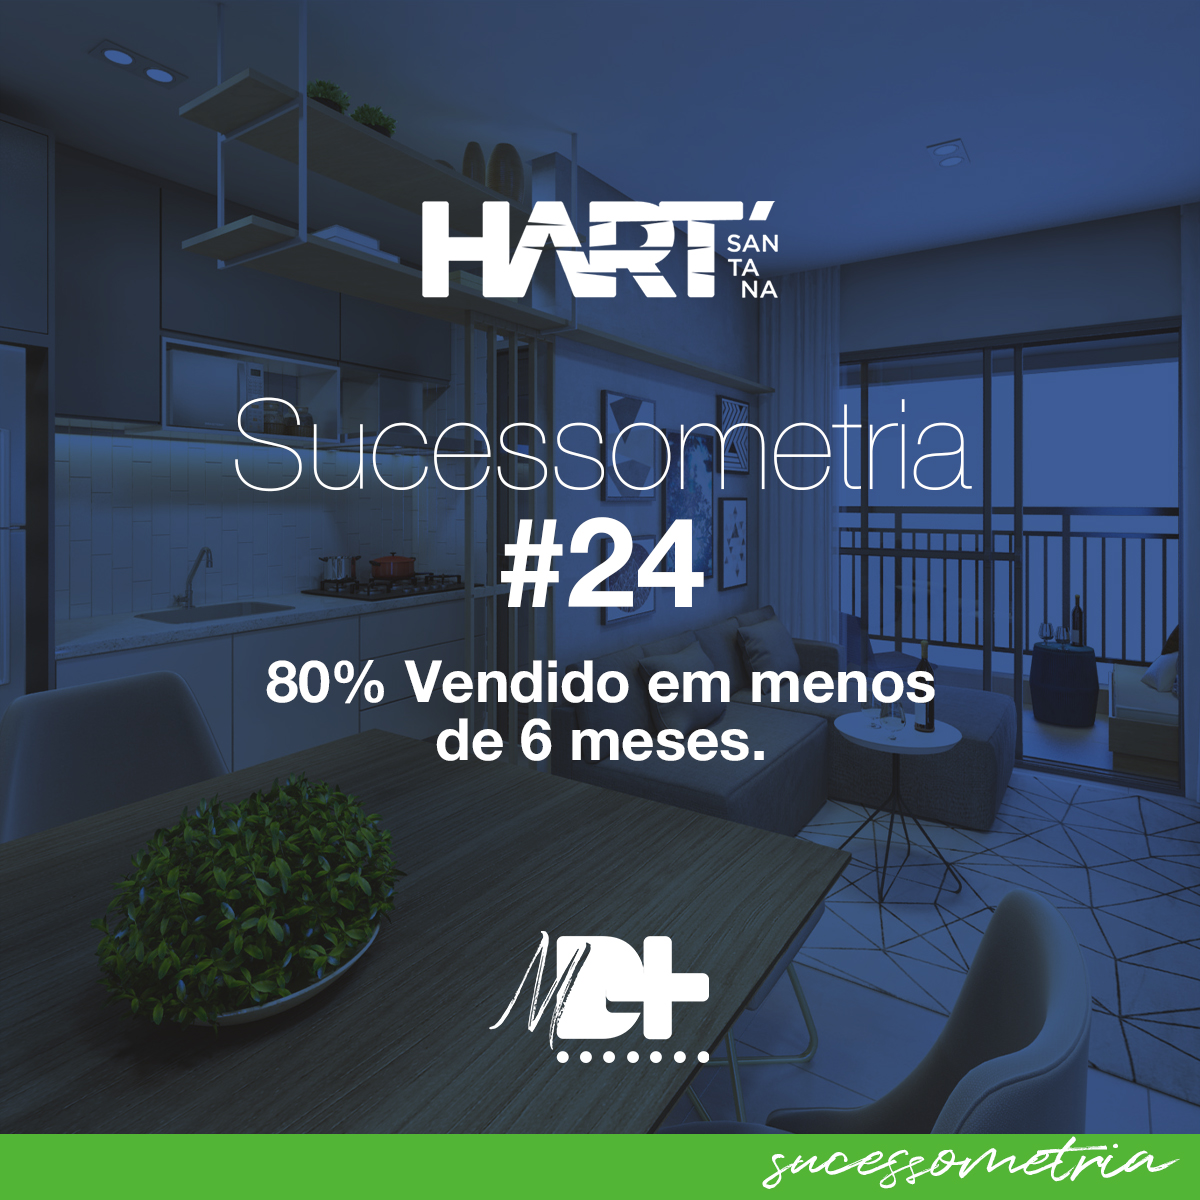 #Sucessometria 24 - Hart Santana - Canva Engenharia - São Paulo - SP 